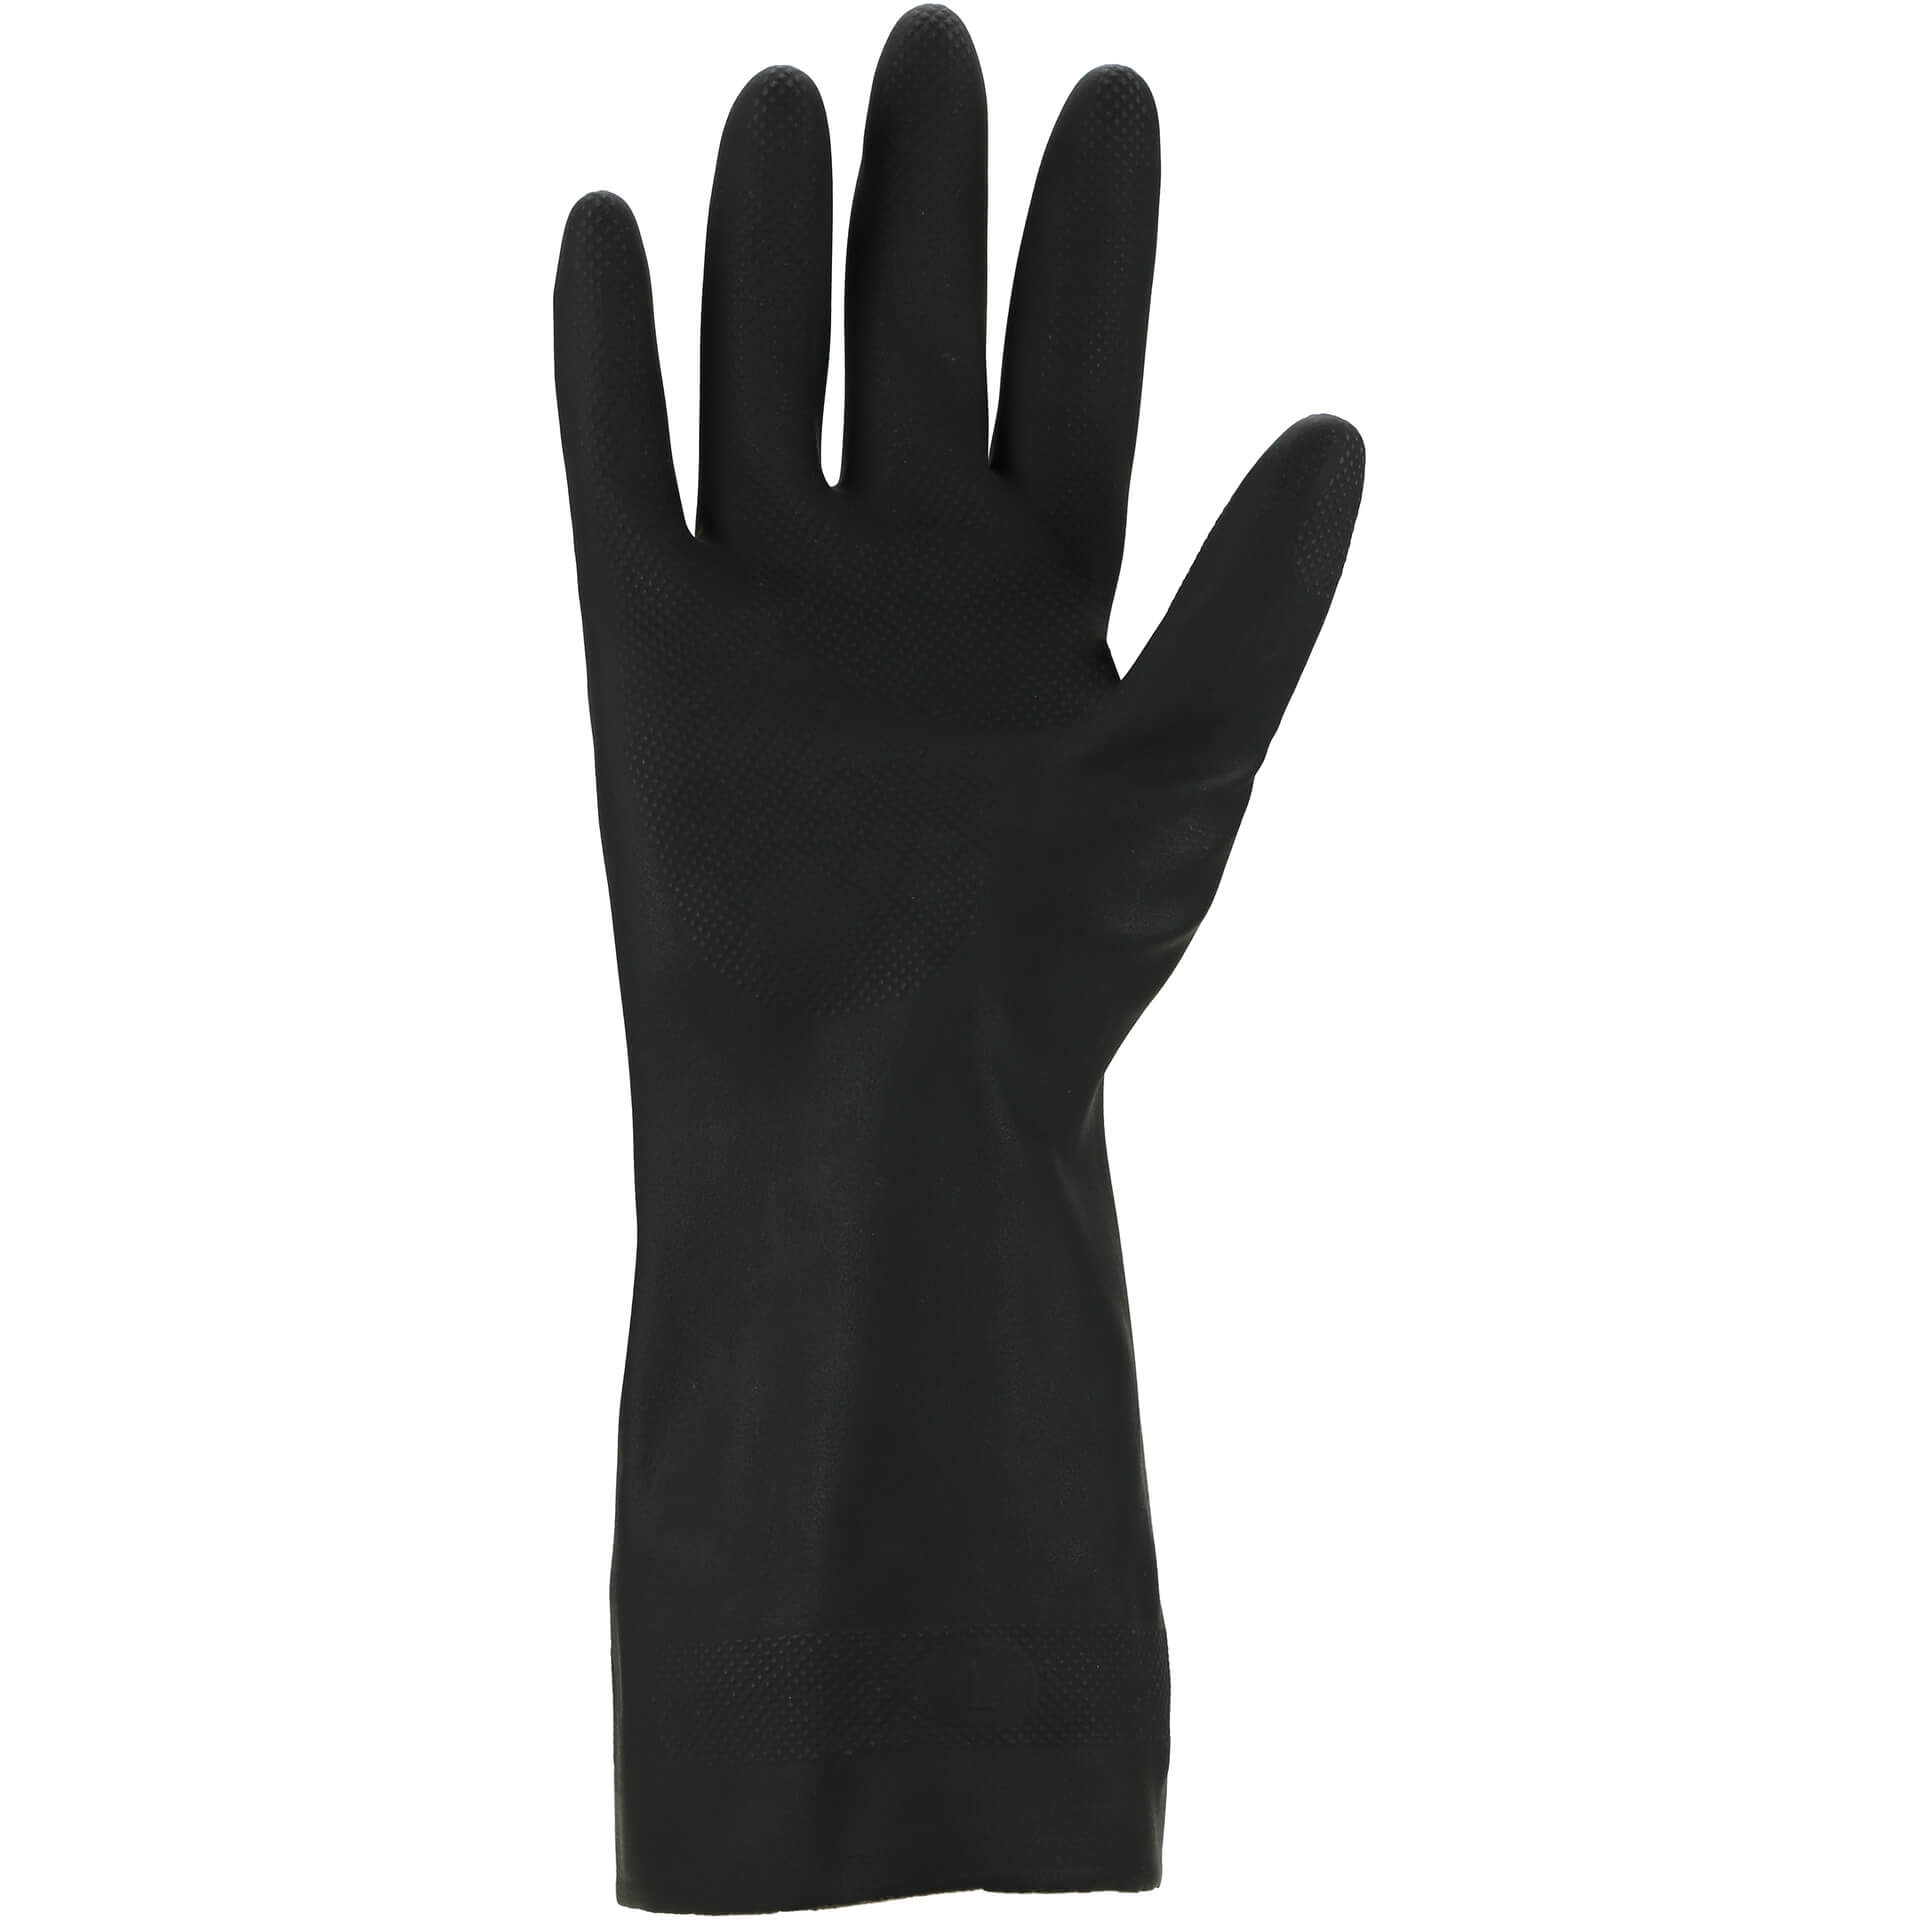 Product afbeelding Chemicaliën beschermende handschoen - Polychloropreen 3470